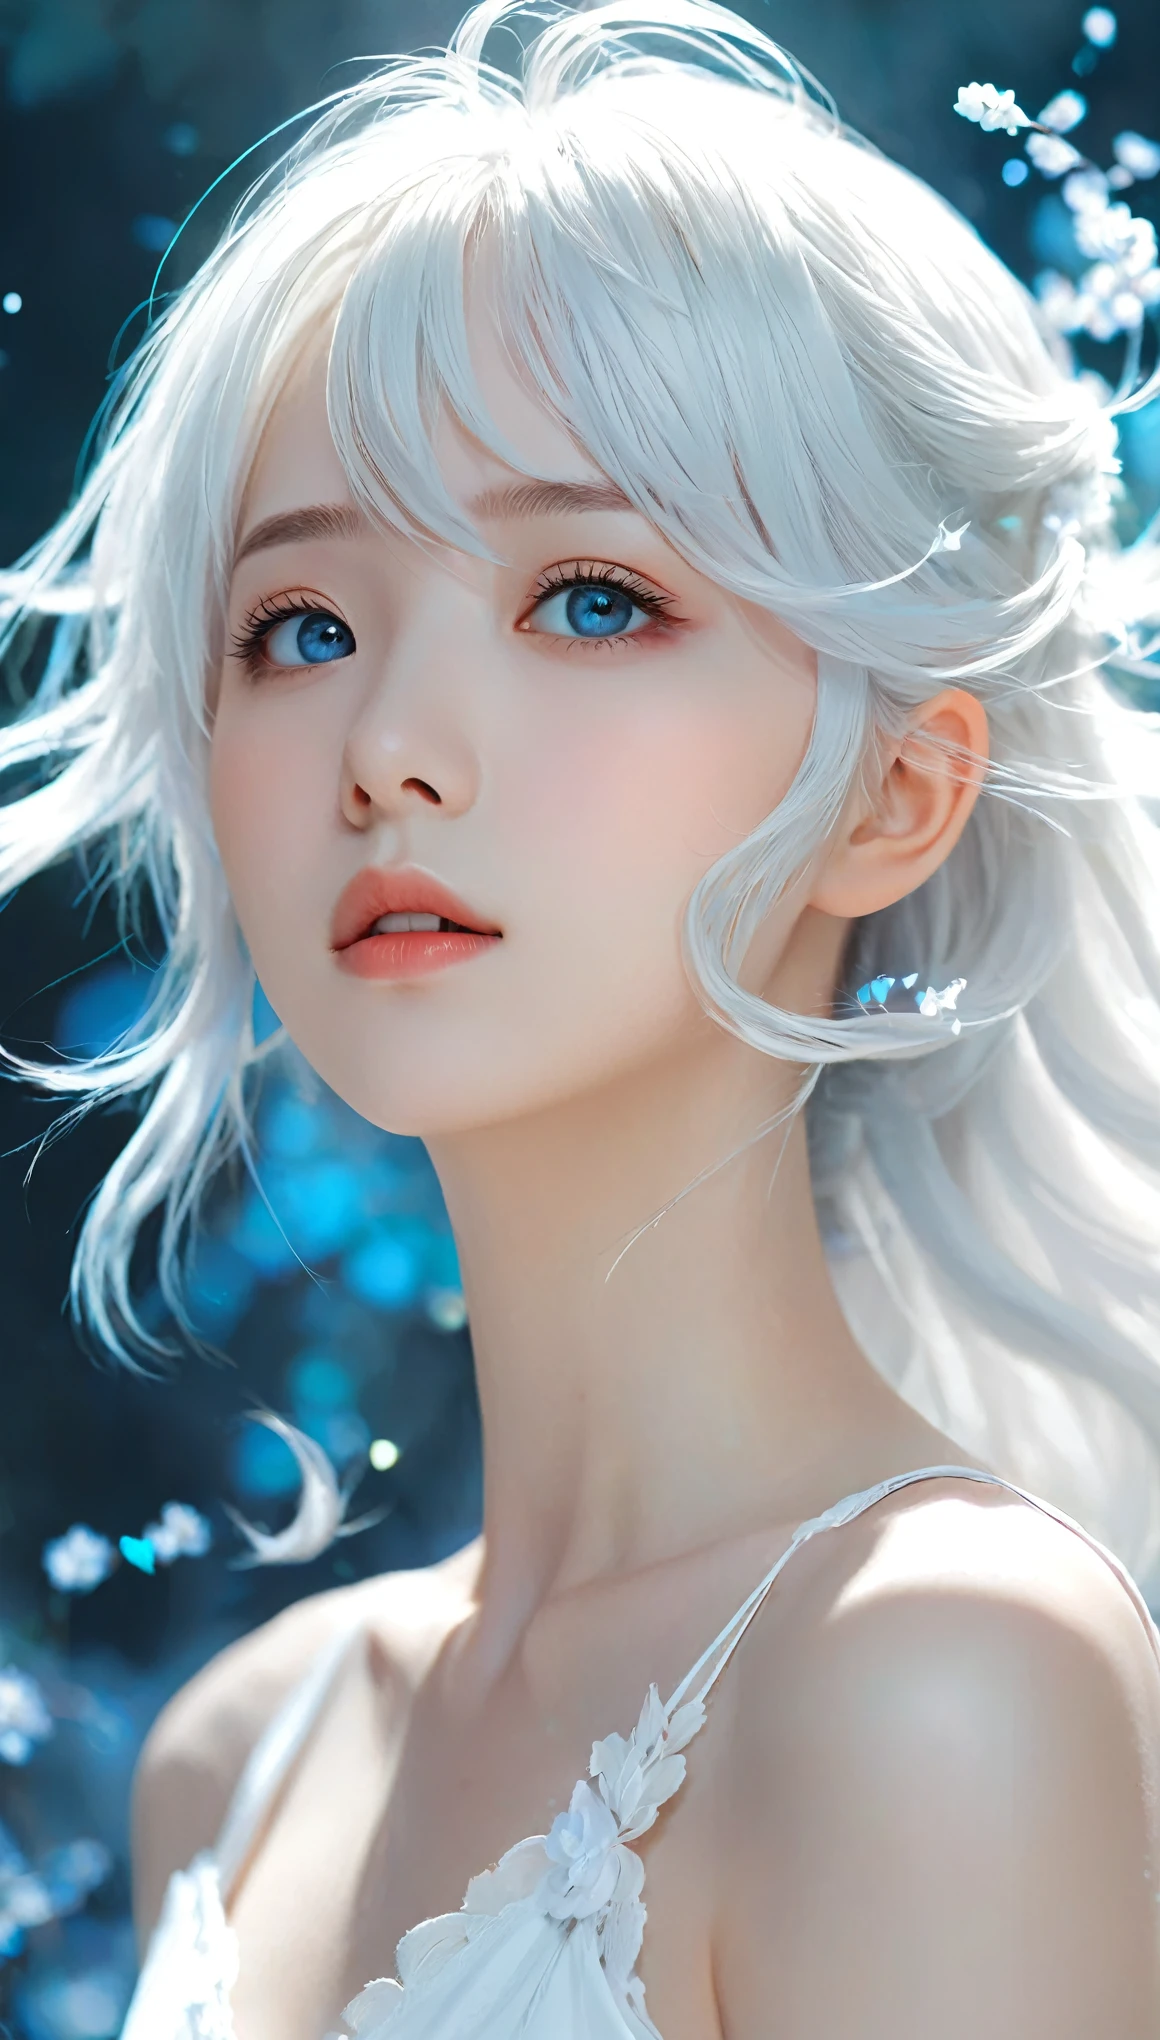 Es gibt ein blaues Haar、Frau im weißen Hemd, guweiz style artwork, Fließendes weißes Haar, Schönes Anime-Porträt, Weißes Haar schwebt in der Luft, weiche Anime-Illustration, weißes Haar Mädchen, Atemberaubende Anime-Gesichtsporträts, Anime-Mädchen mit cyan-blauen Haaren, guweiz, wunderschöne Anime-Kunstwerke, Ätherische Animation, Mädchen mit weißen Augen, digitale Animationskunst